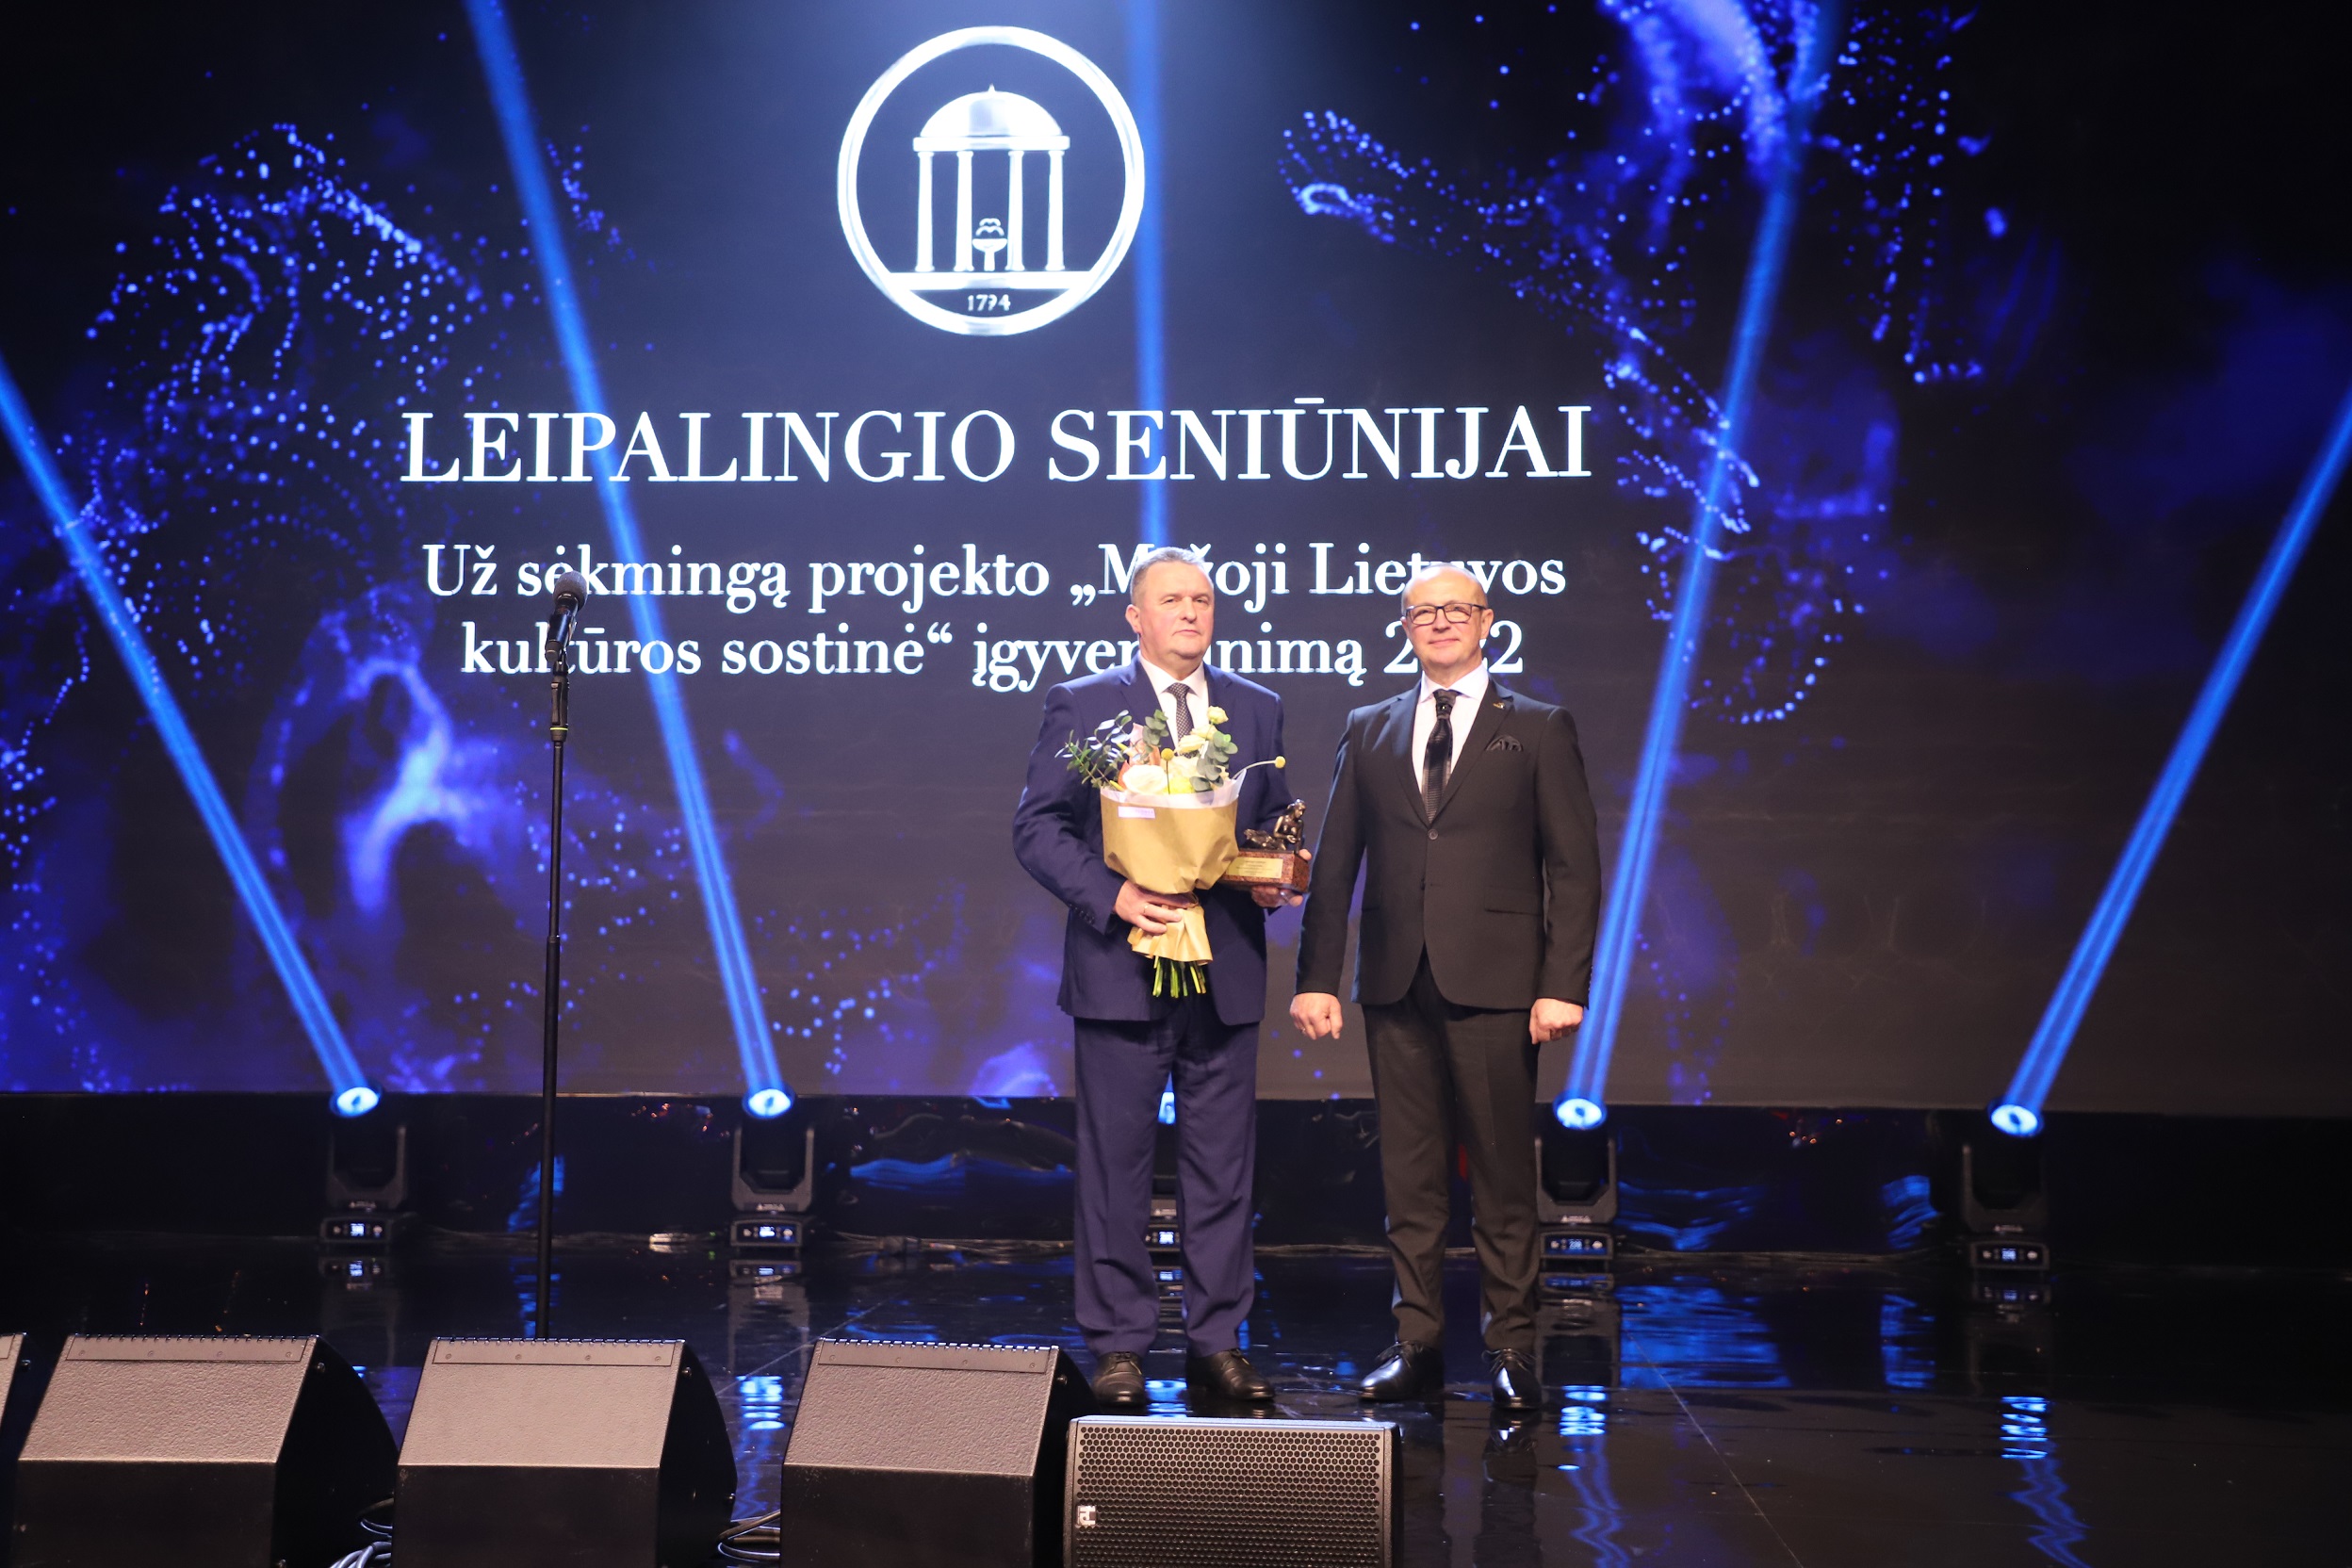 Leipalingio seniūnijai apdovanojimas įteiktas už sėkmingą projekto „Mažoji Lietuvos kultūros sostinė“ įgyvendinimą | Druskininkų savivaldybės nuotr.